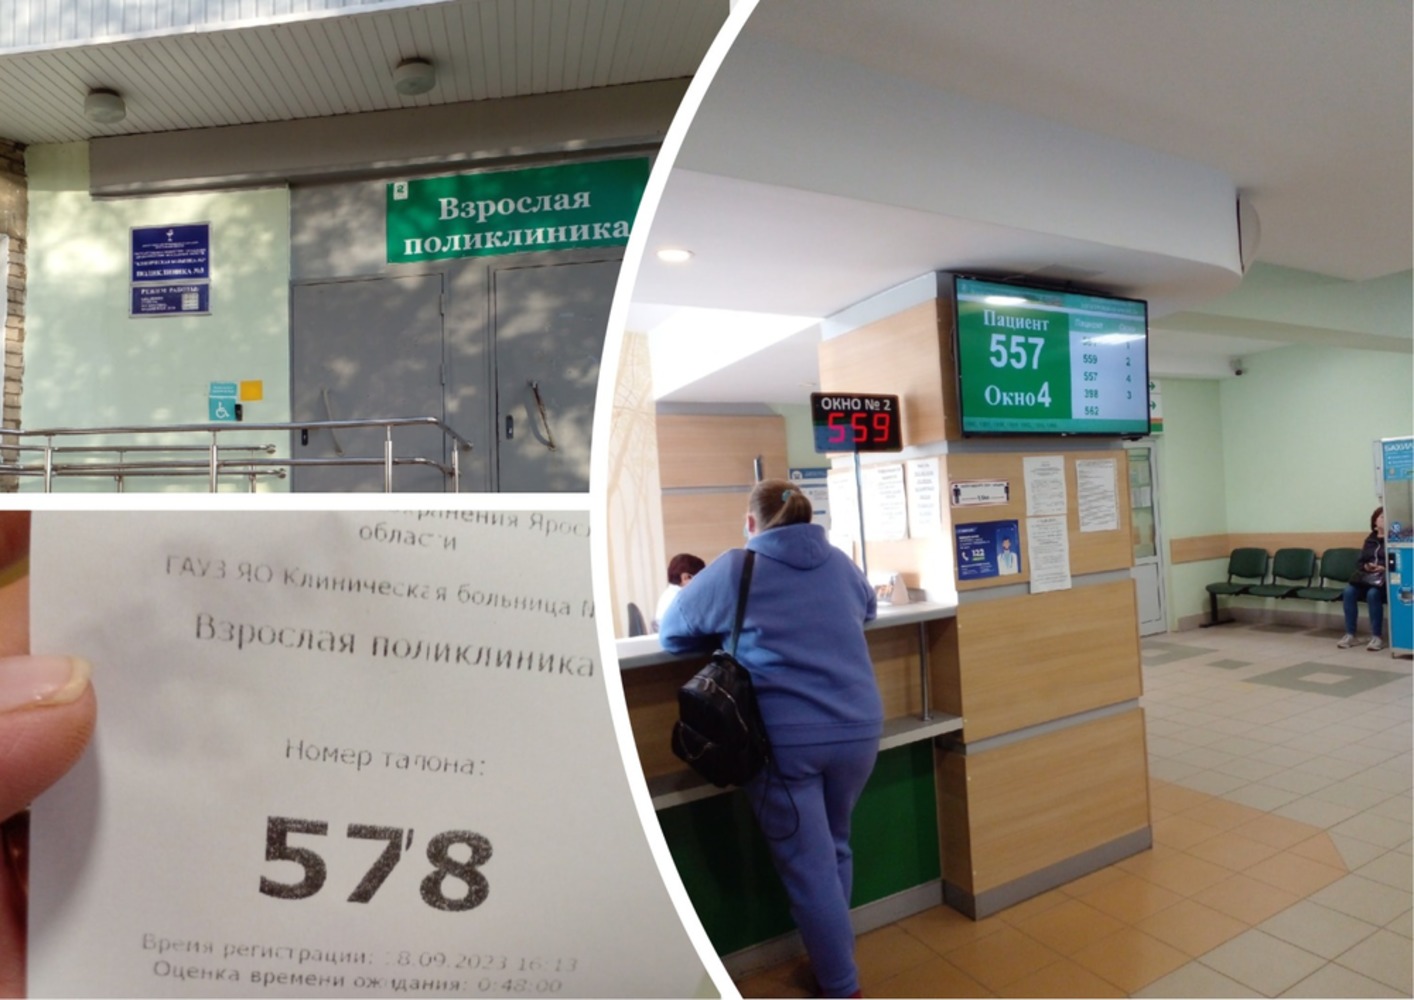 Ярославцы жалуются на огромные очереди в поликлинике